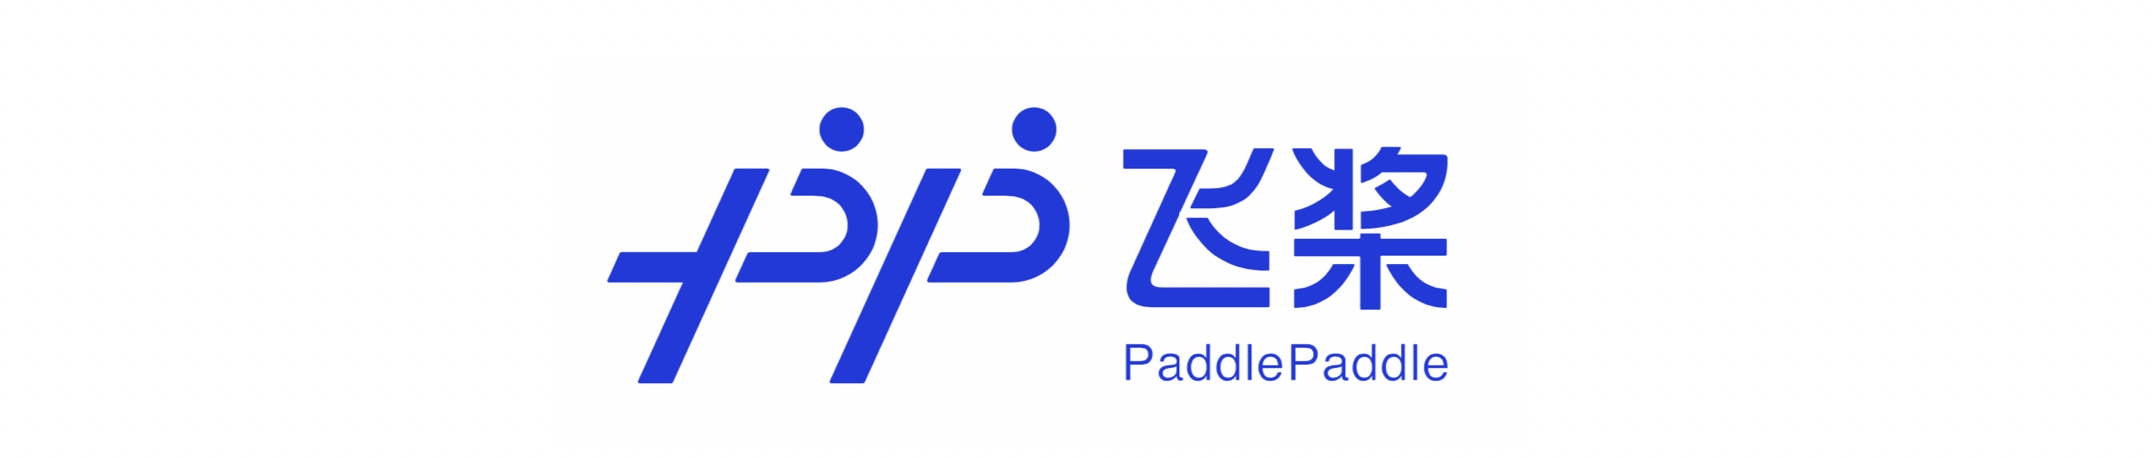 PaddlePaddle लोगो